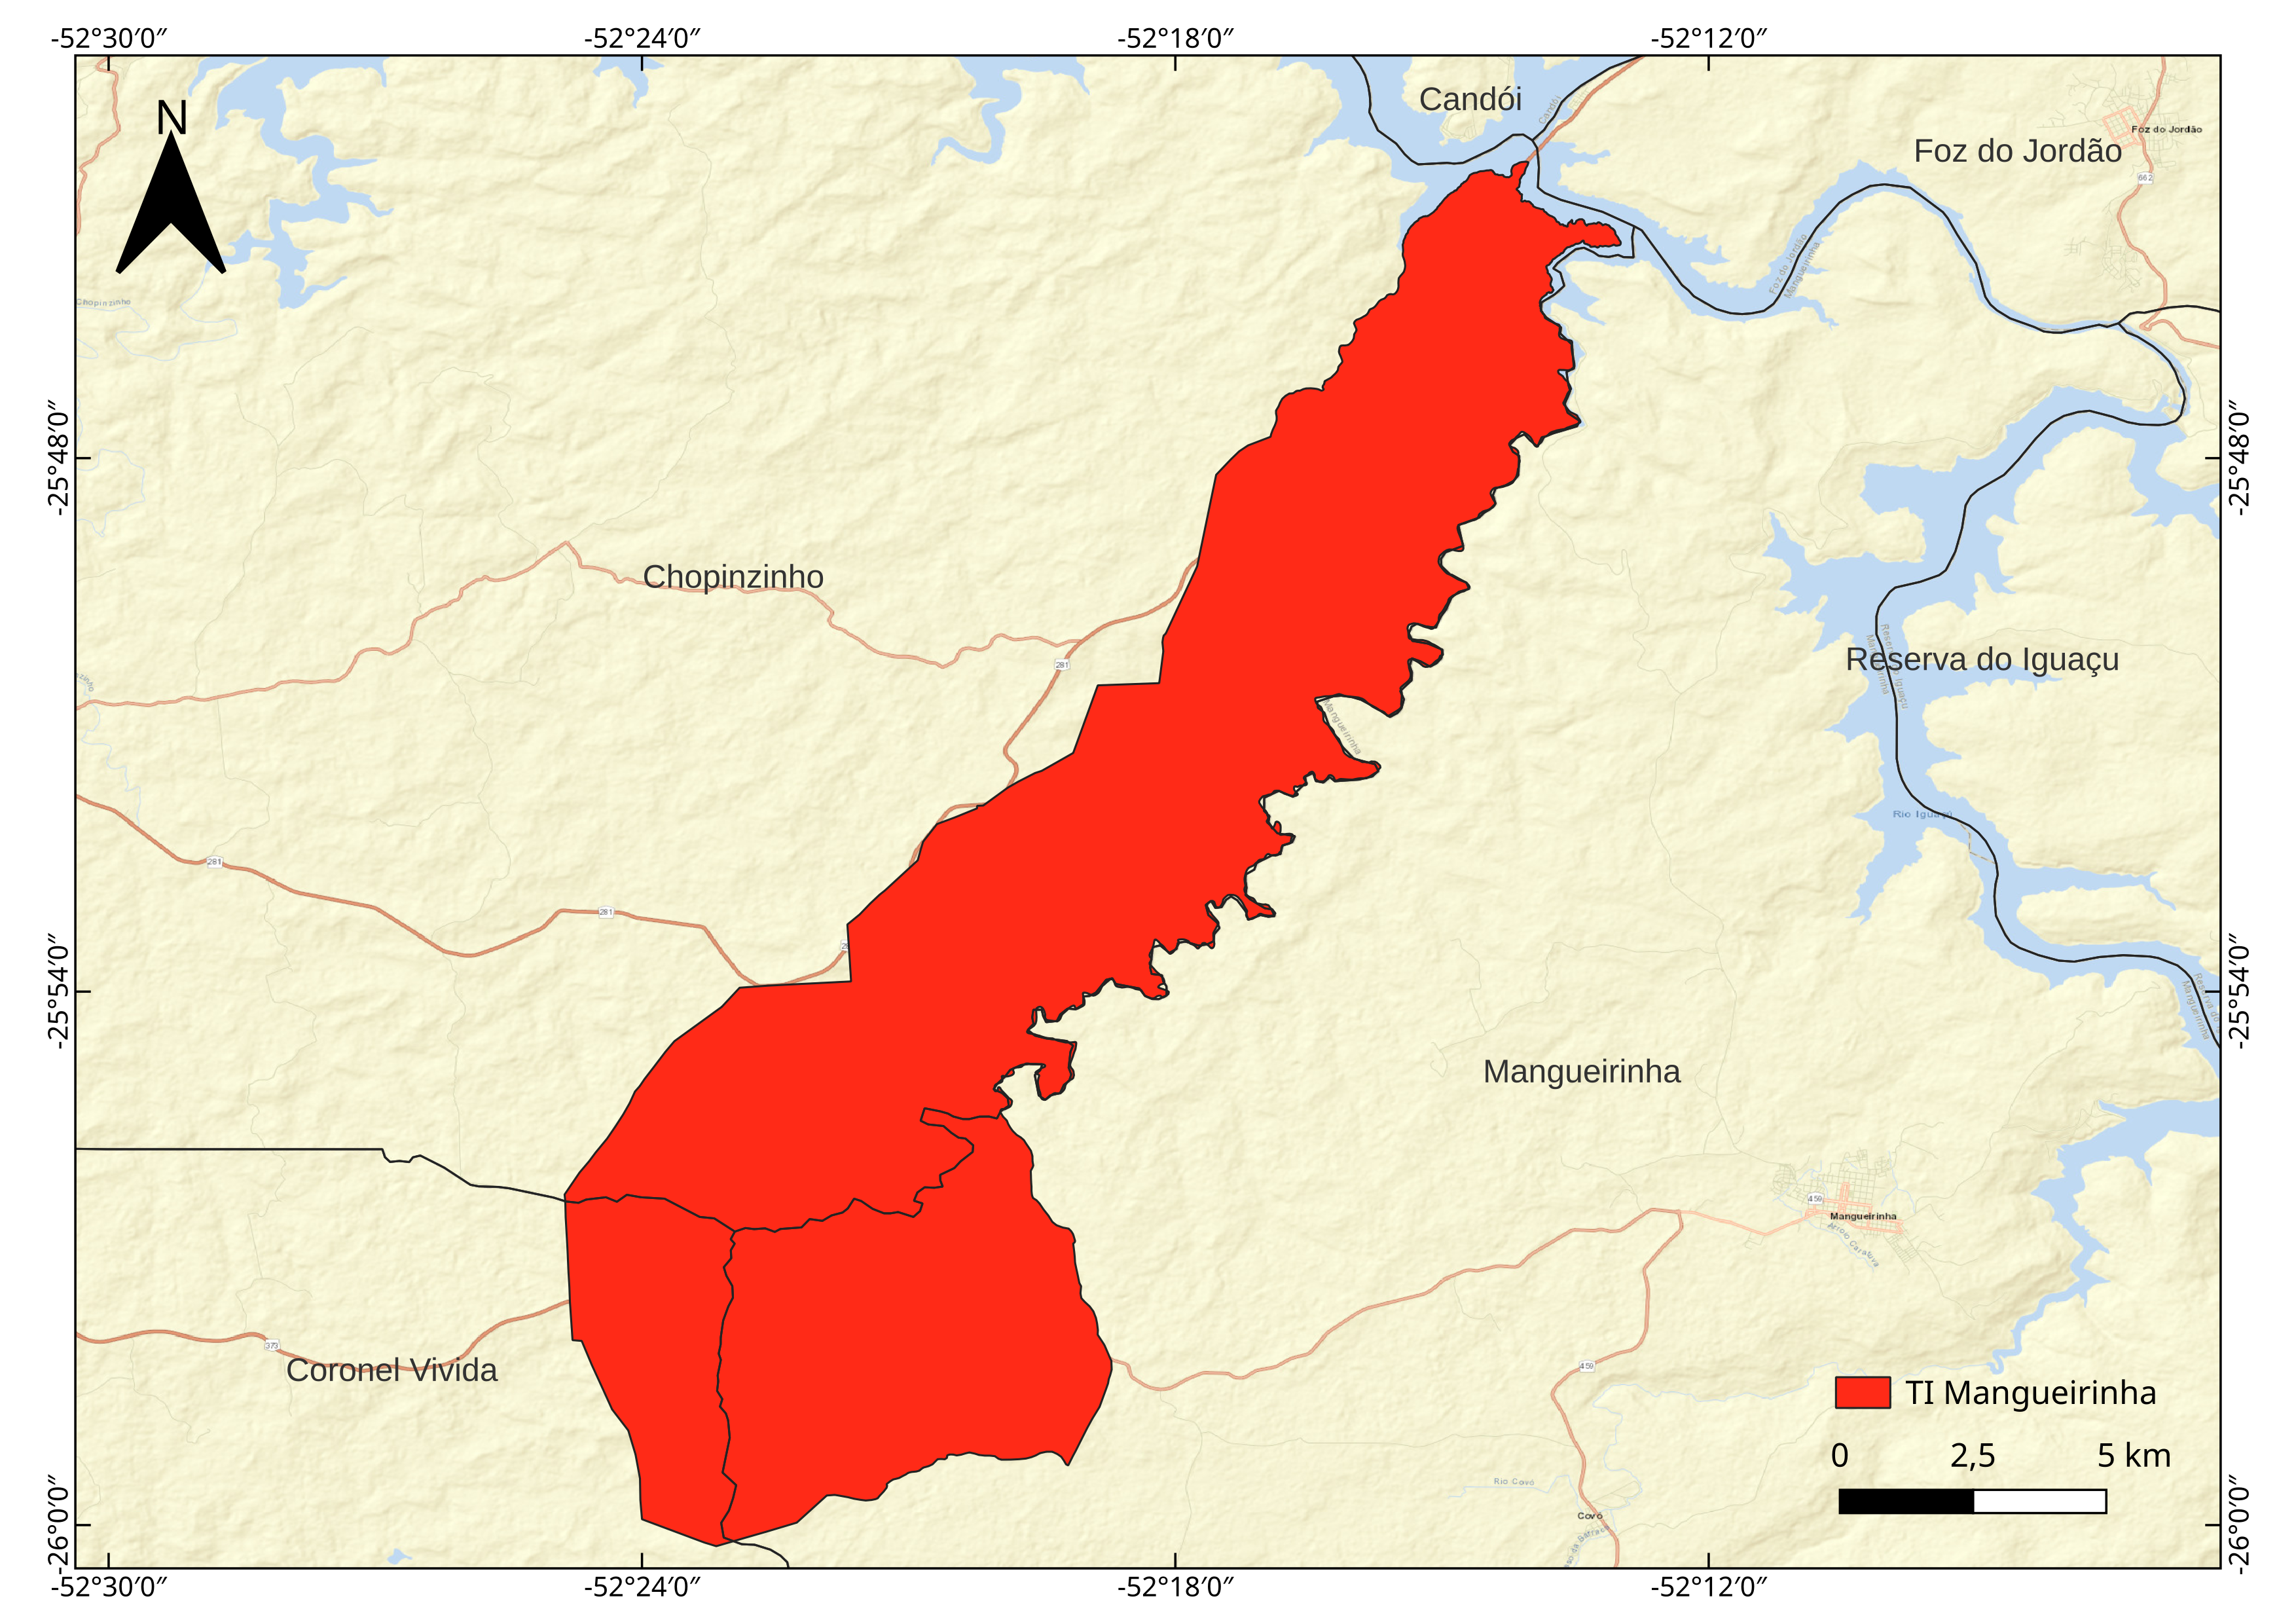 Imagem 1. Mapa de localização da TI Mangueirinha